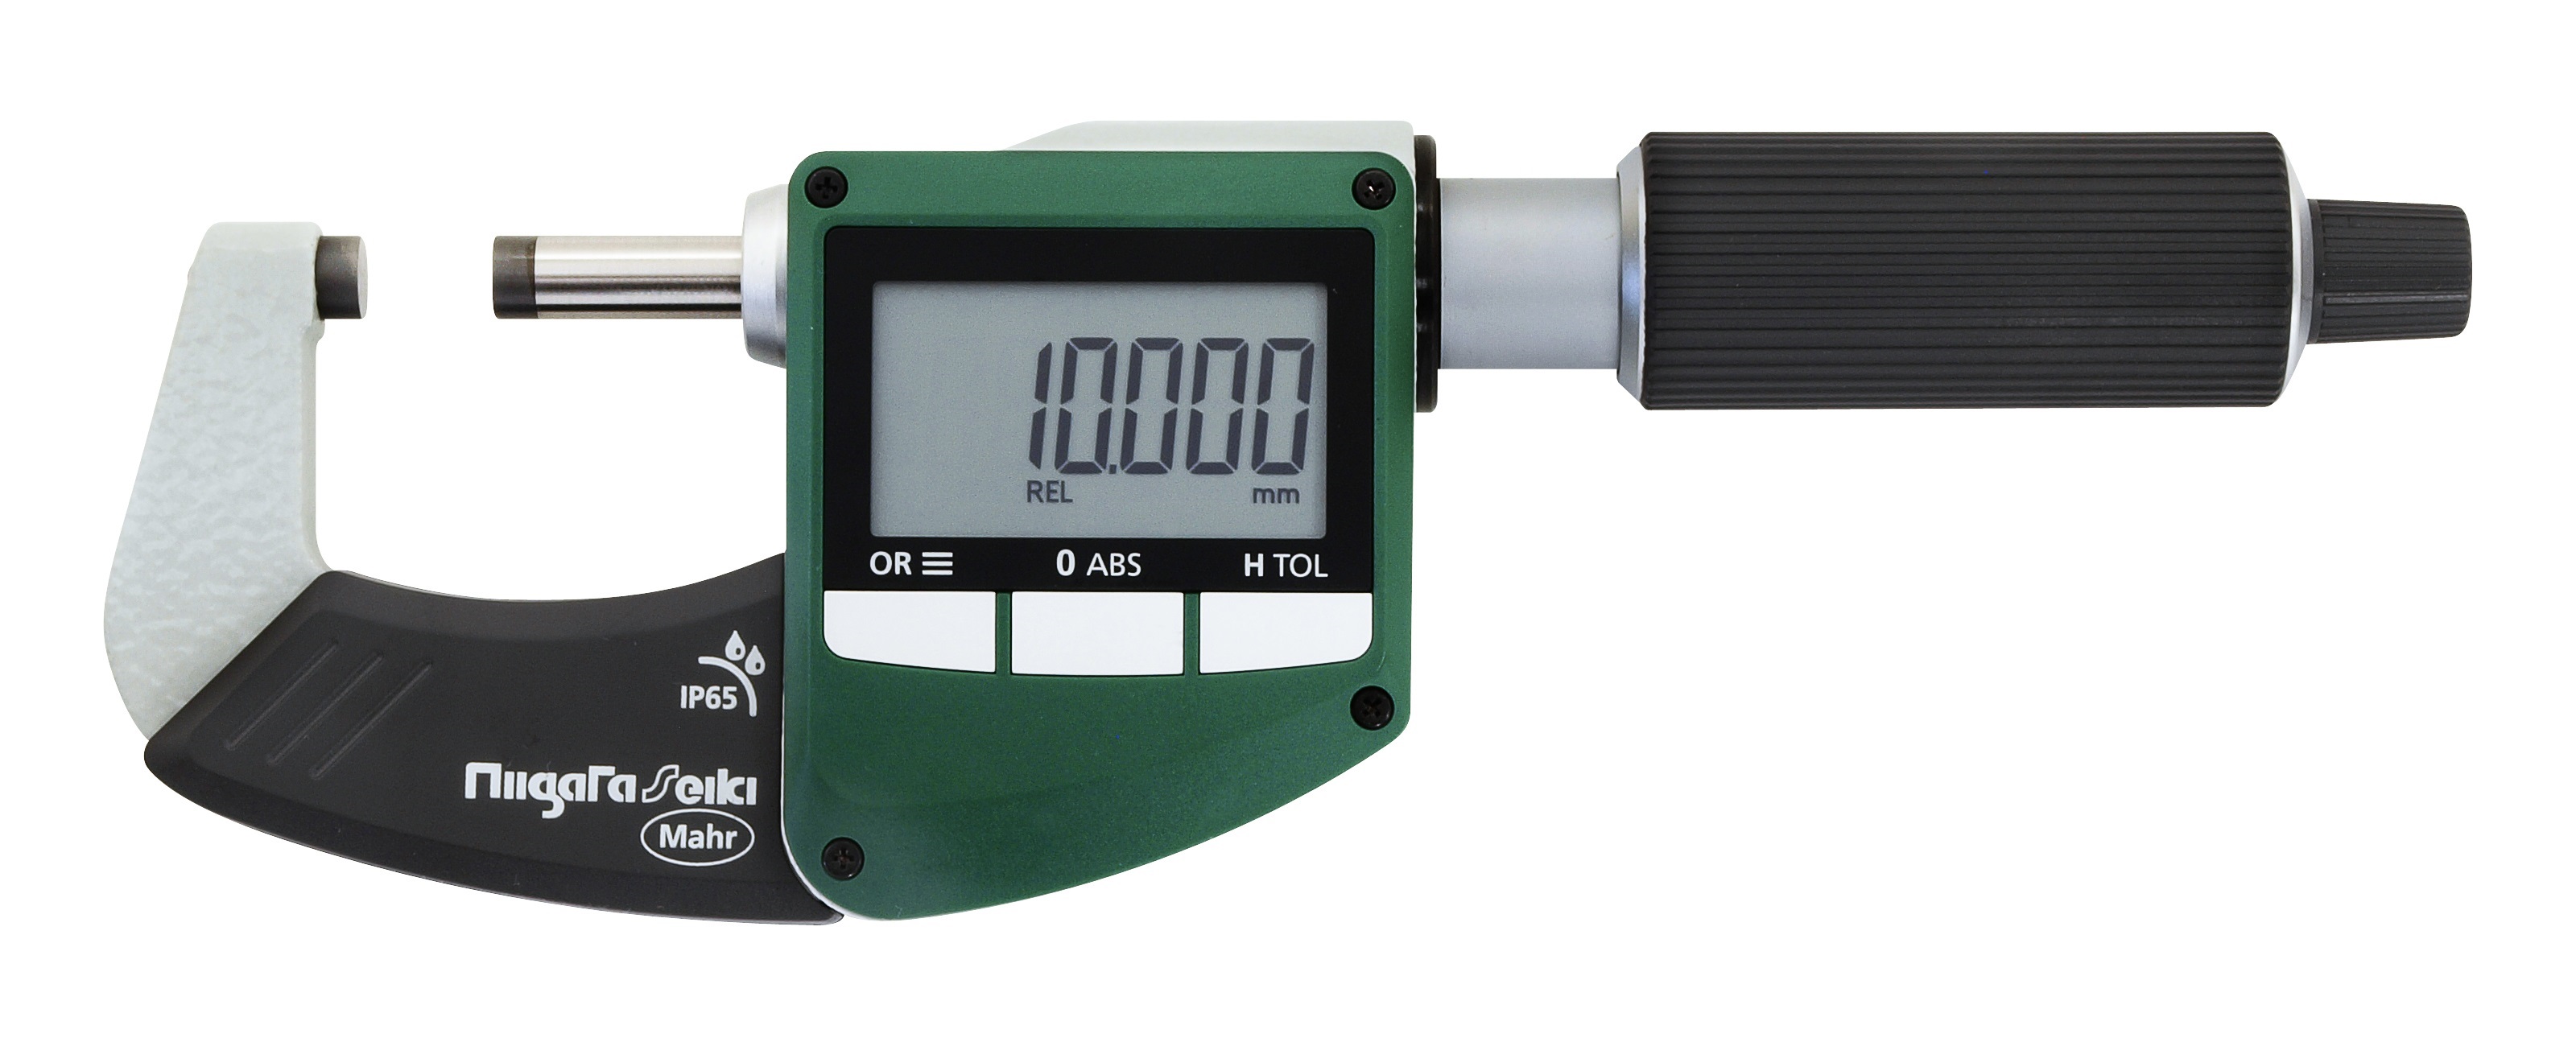 期間限定特価】 新潟精機 SK デジタルテストインジケーター Sライン 防水IP65 0-0.8mm 最小表示0.001mm DET-234S1 